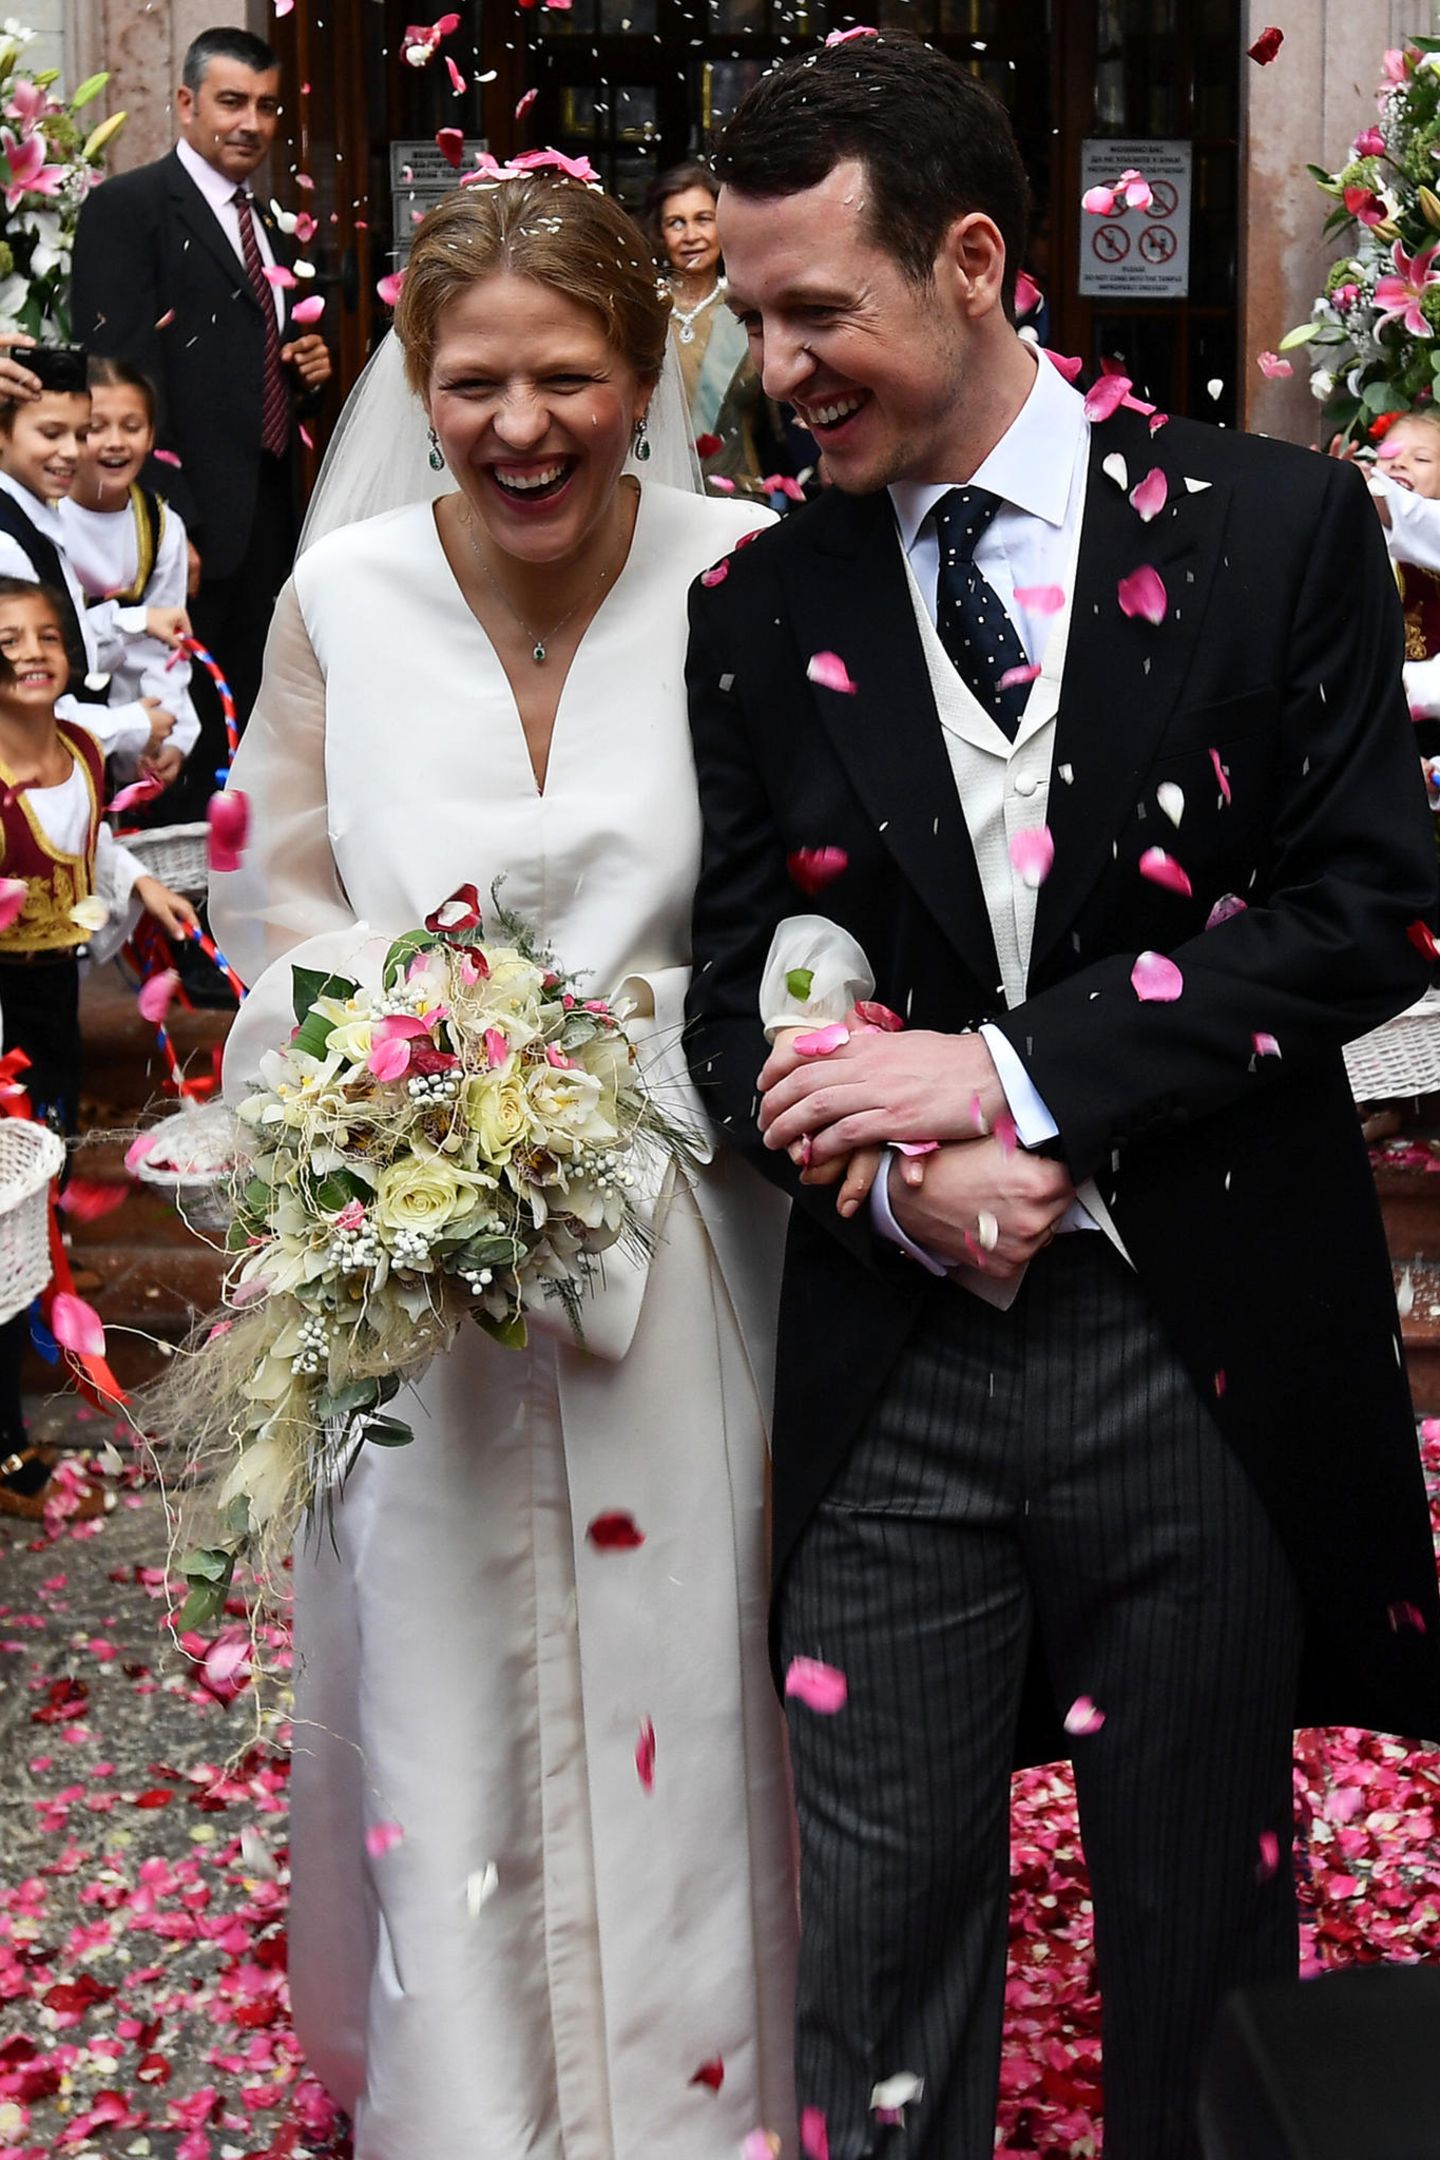 Vor der Kathedrale erwartet das frisch vermählte Ehepaar ein Regen aus Rosenblättern. Jetzt können sie so richtig strahlen und ihr Glück erstmals fassen.